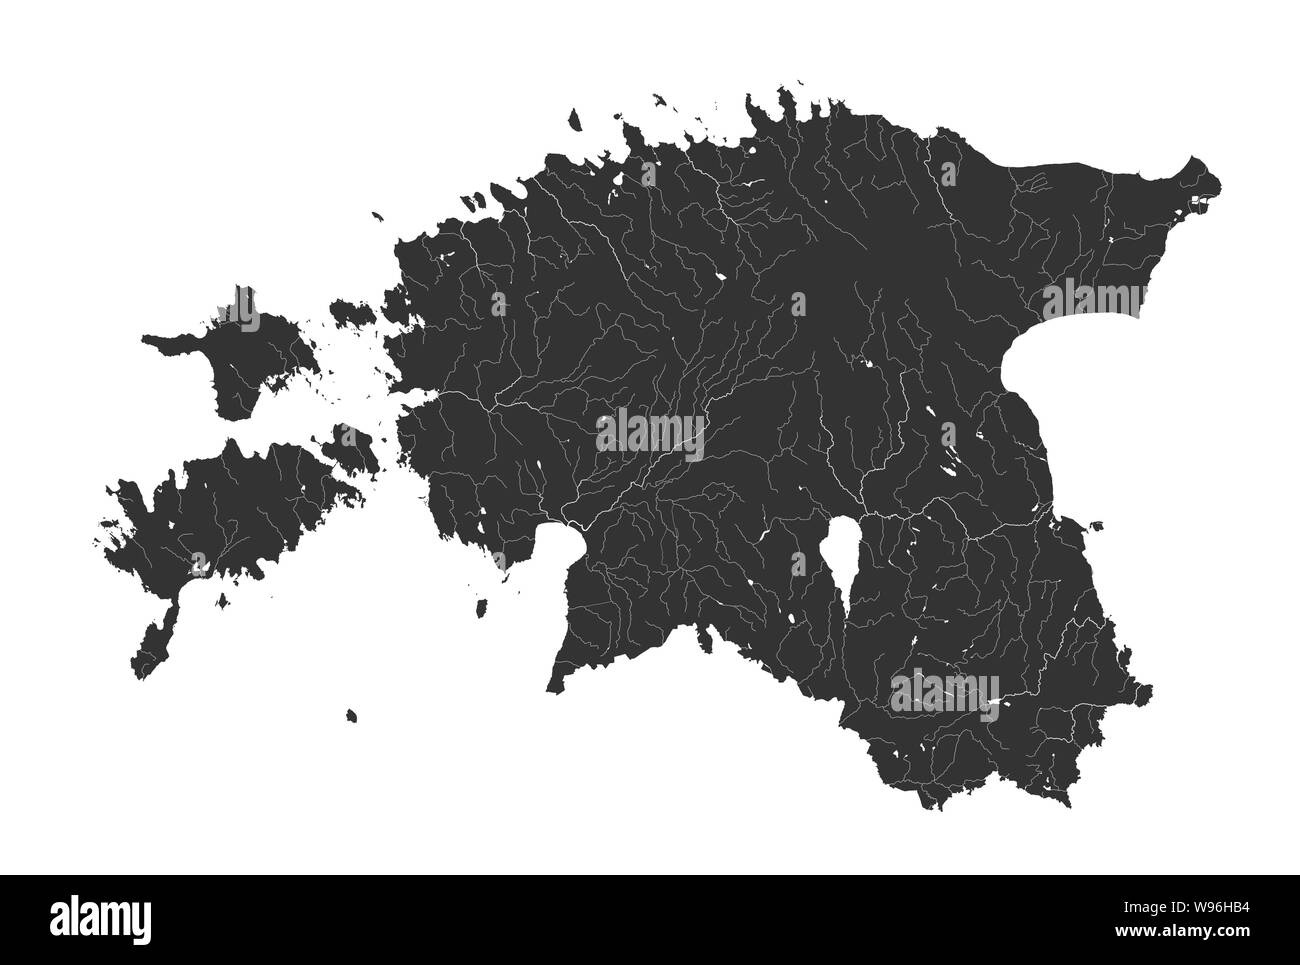 Estados bálticos - Mapa de Estonia. Hecho a mano. Los ríos y lagos son mostradas. Por favor mire mis otras imágenes de la serie cartográfica - todos ellos son muy precisos Ilustración del Vector